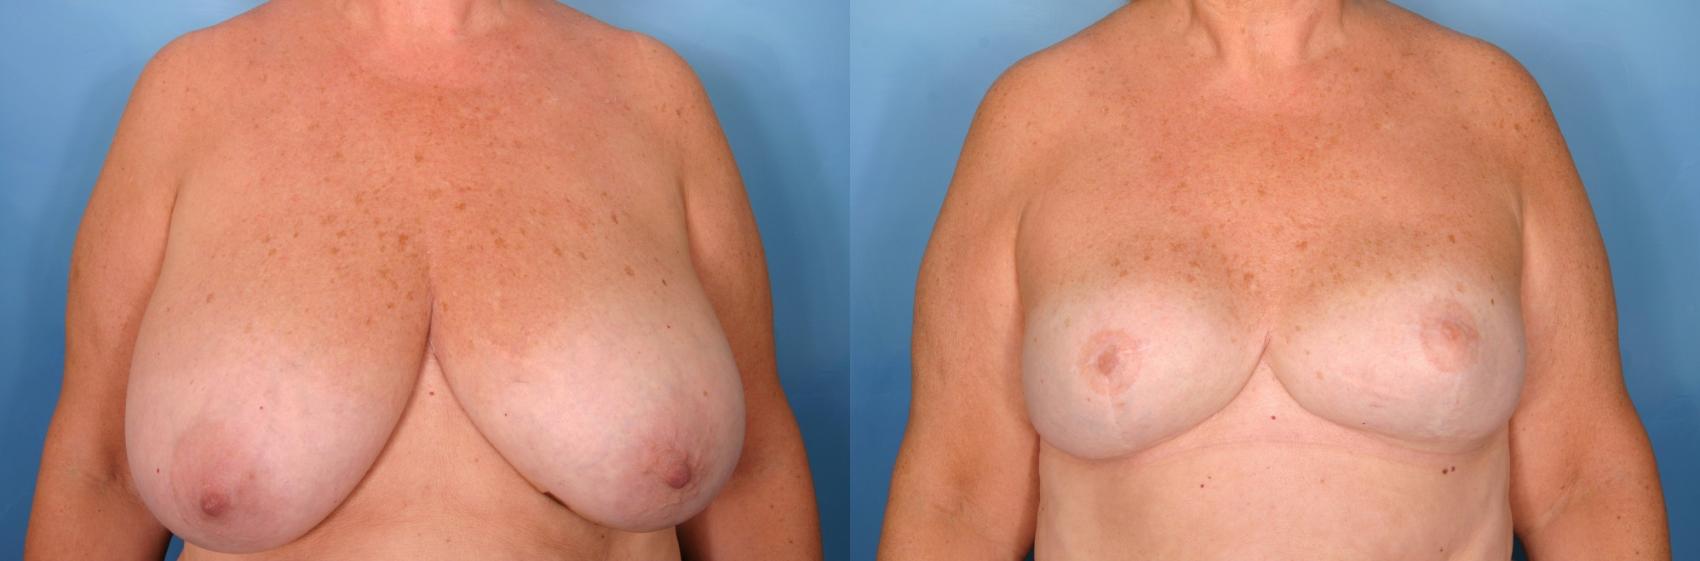 乳房重建前后病例85视图1在那不勒斯和佛罗里达州迈尔斯堡的视图